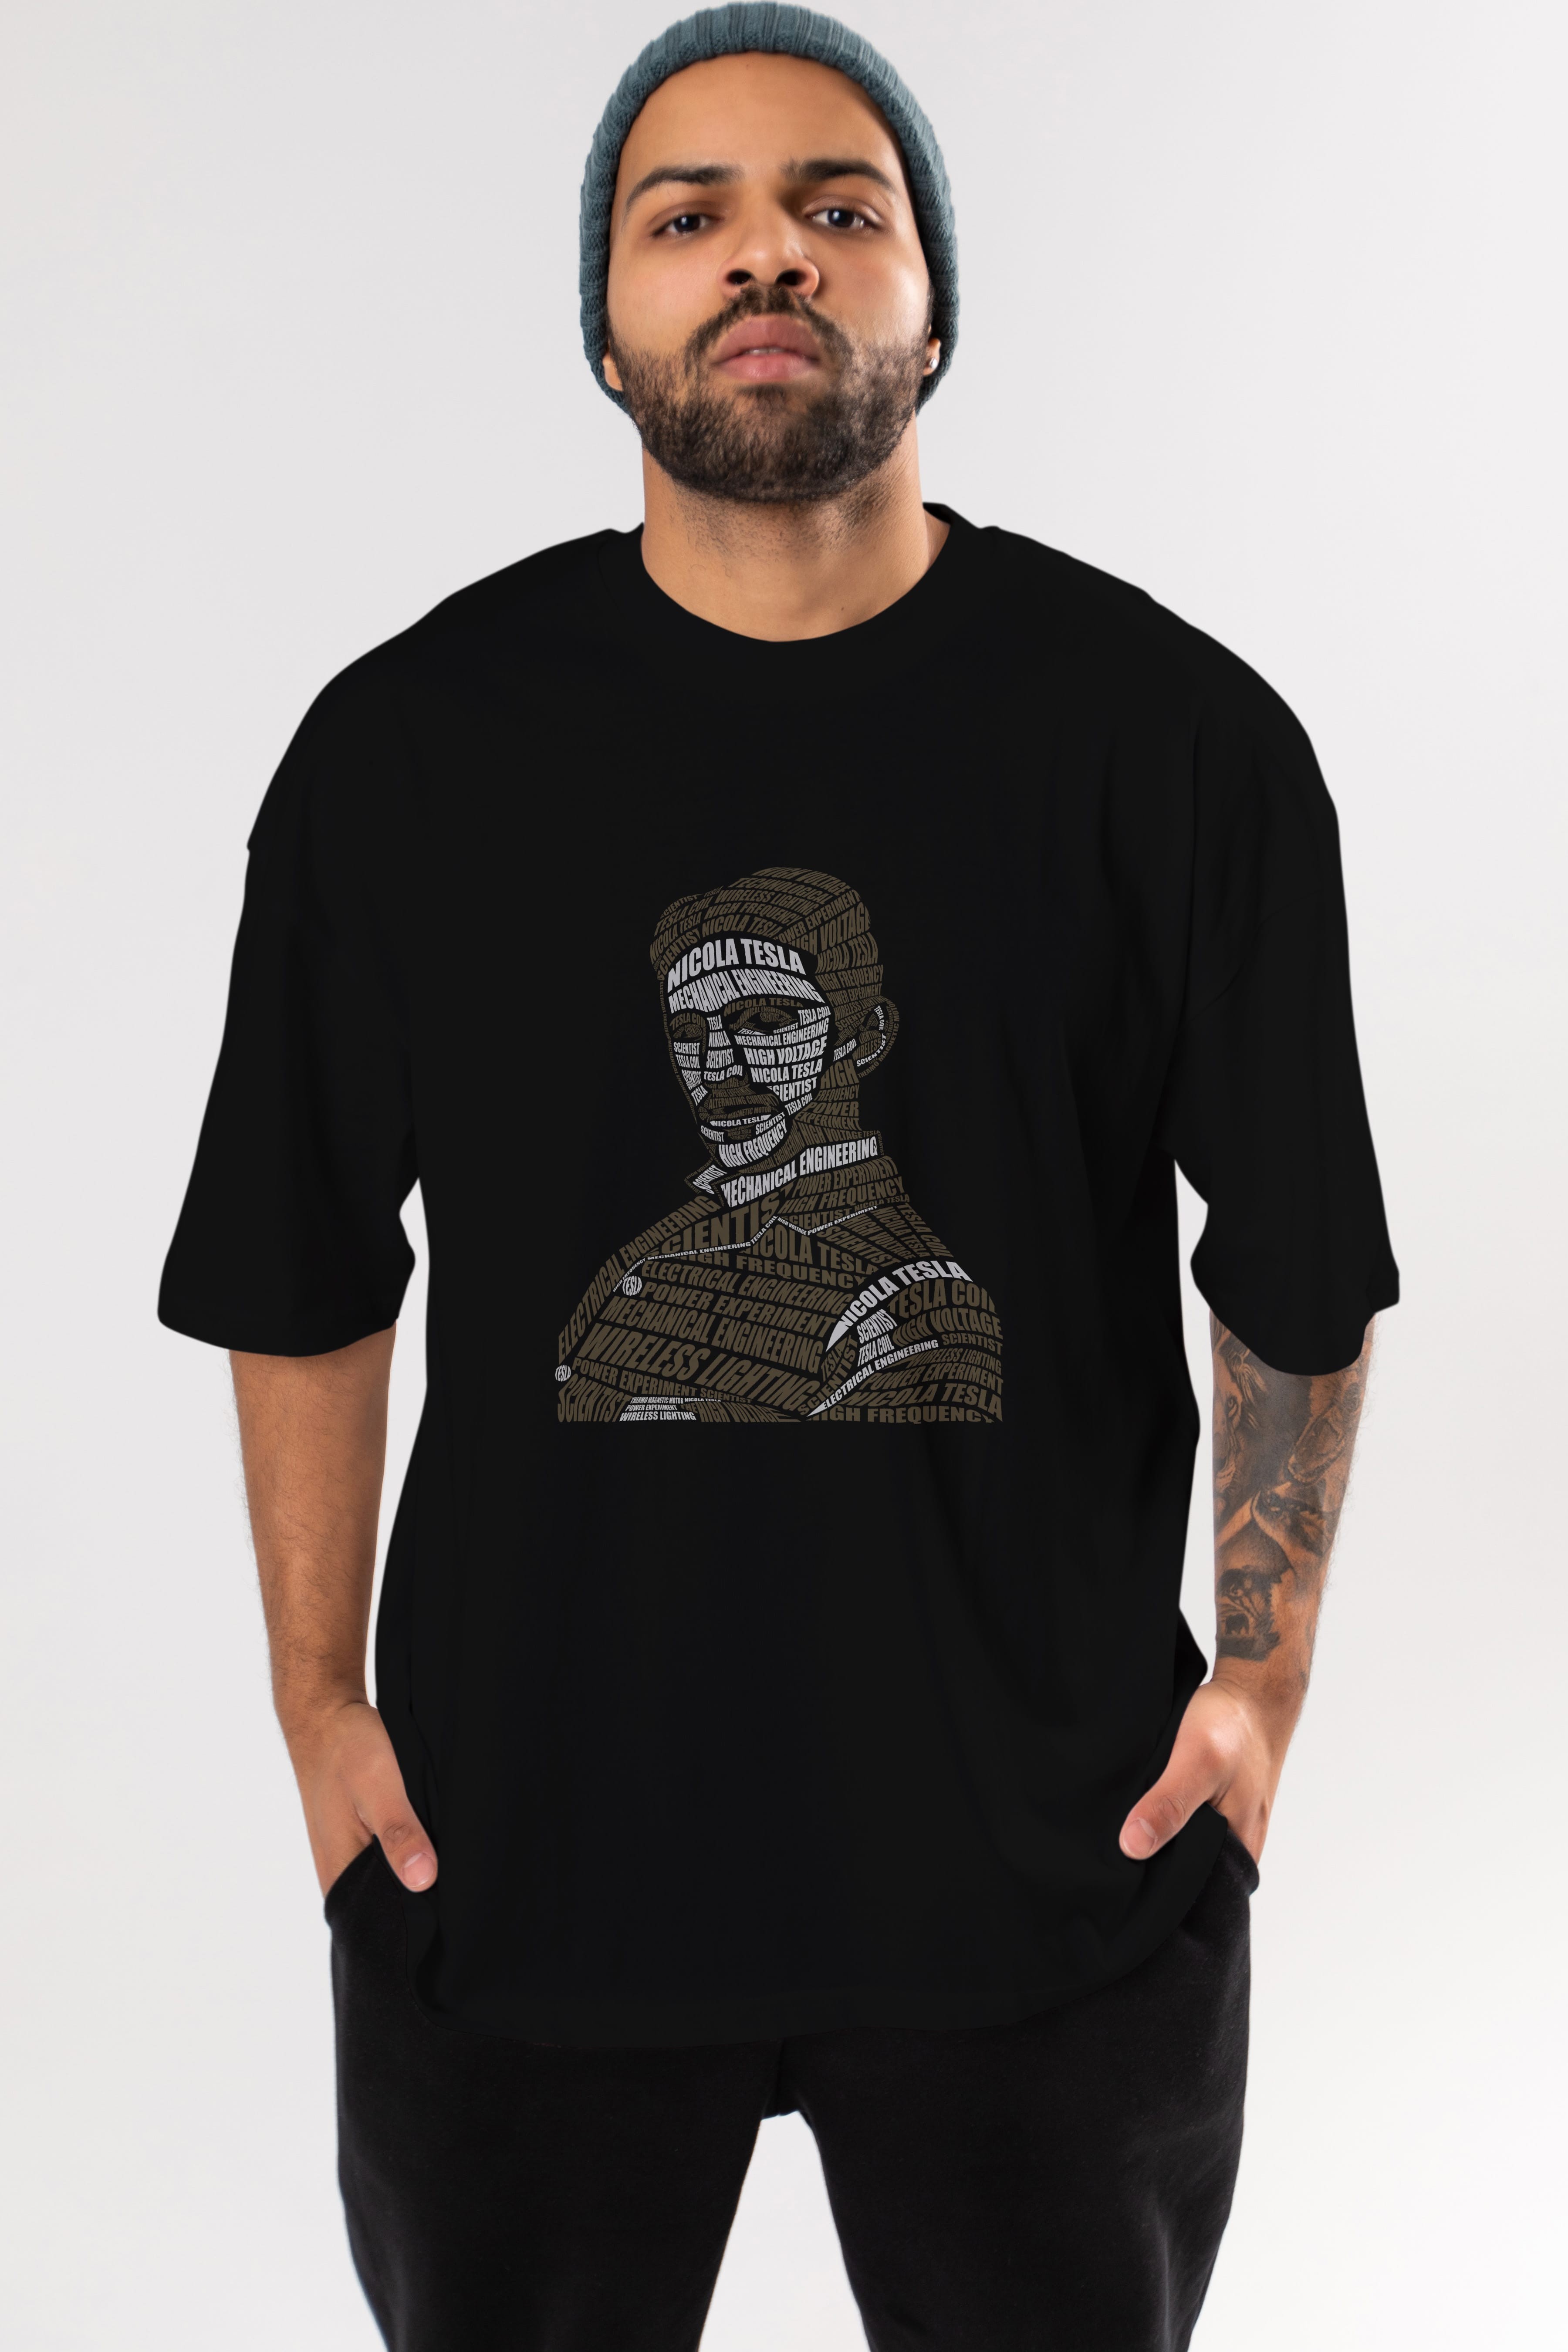 Nikola Tesla Calligram Ön Baskılı Oversize t-shirt %100 pamuk Erkek Kadın Unisex